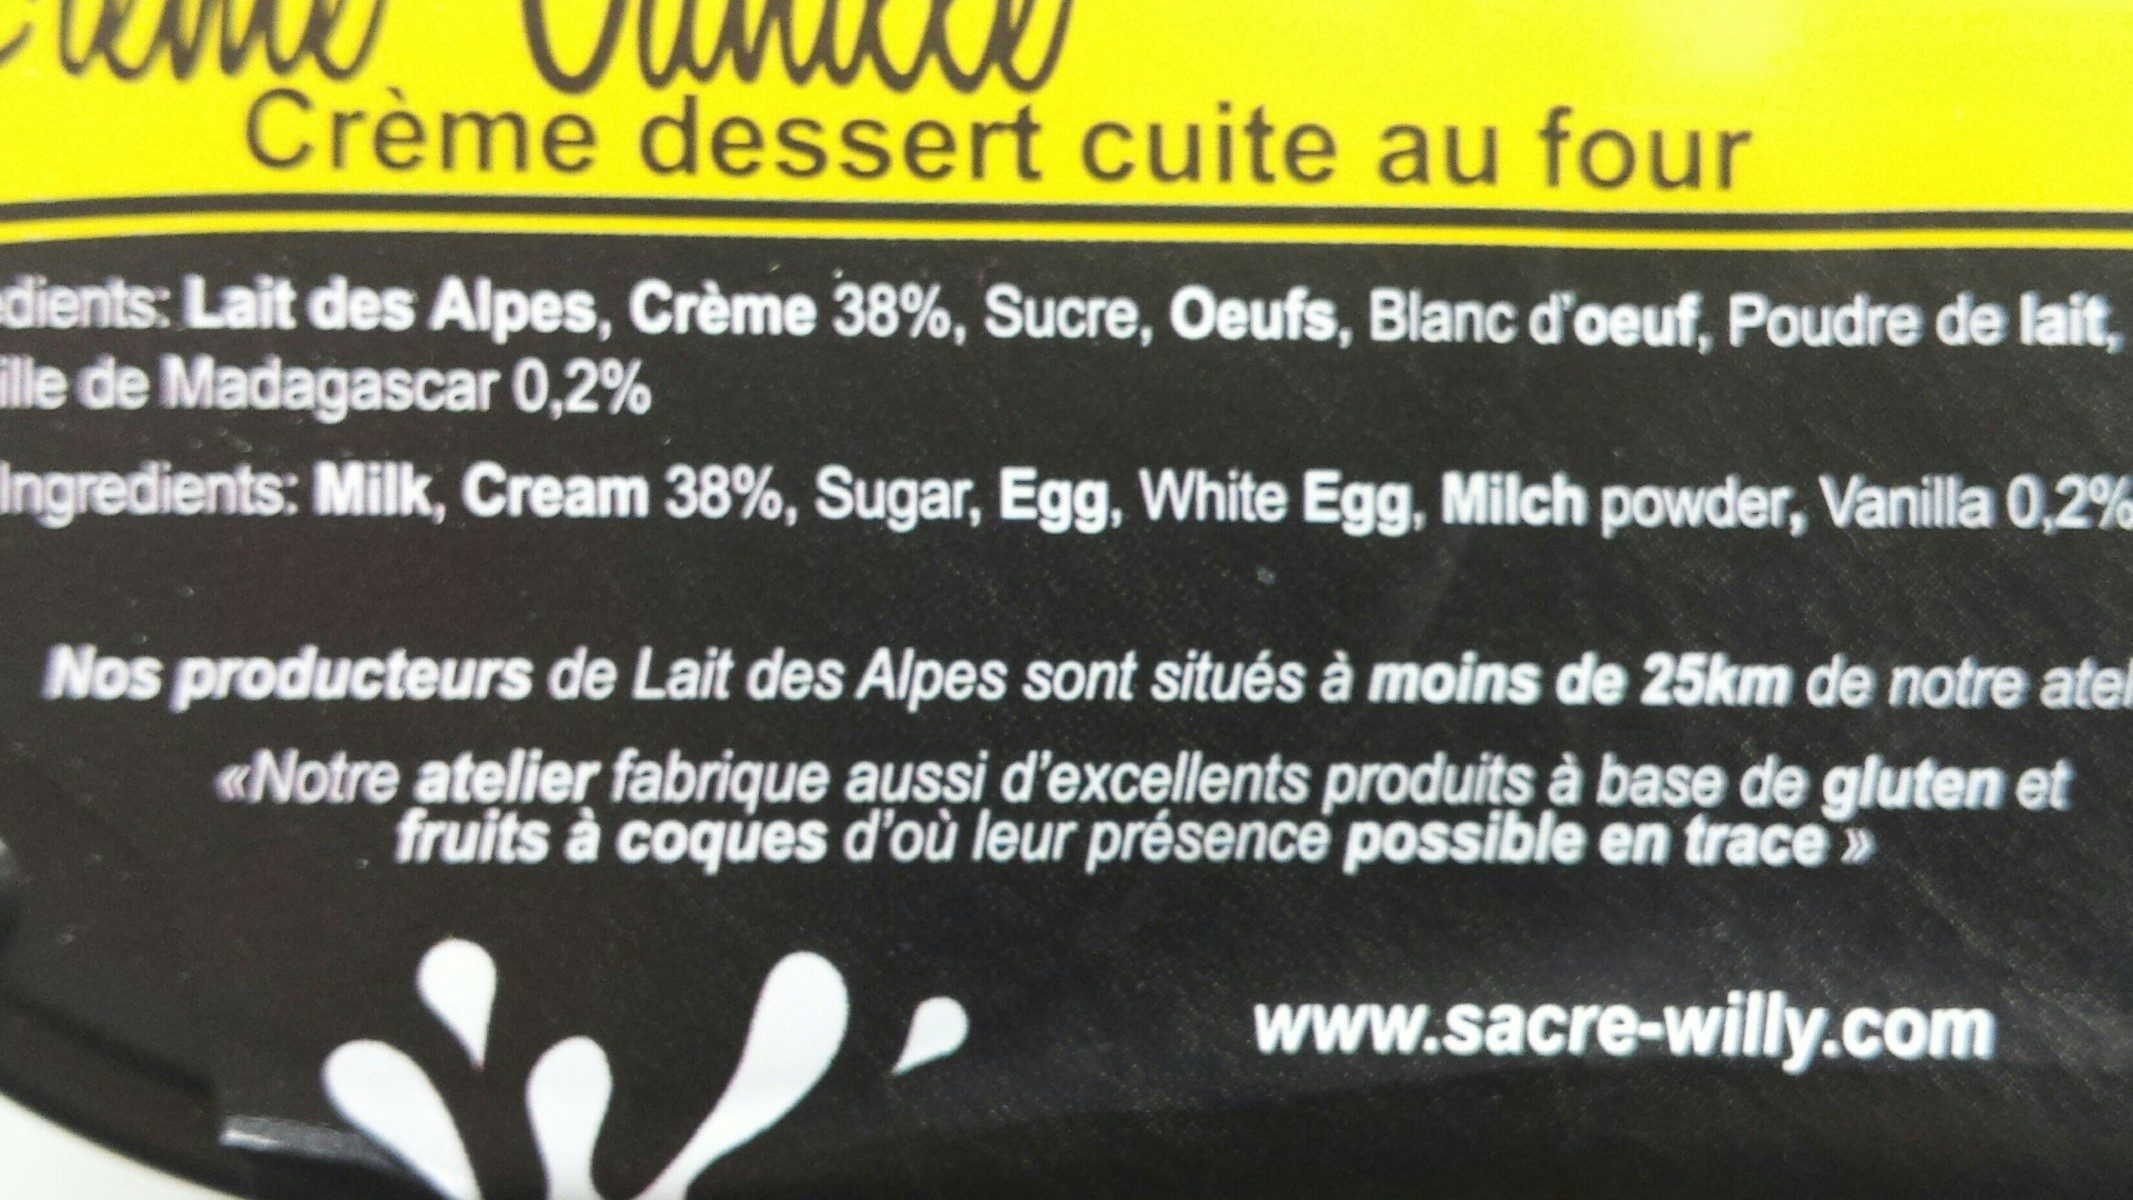 Crème vanille - Ingredients - fr